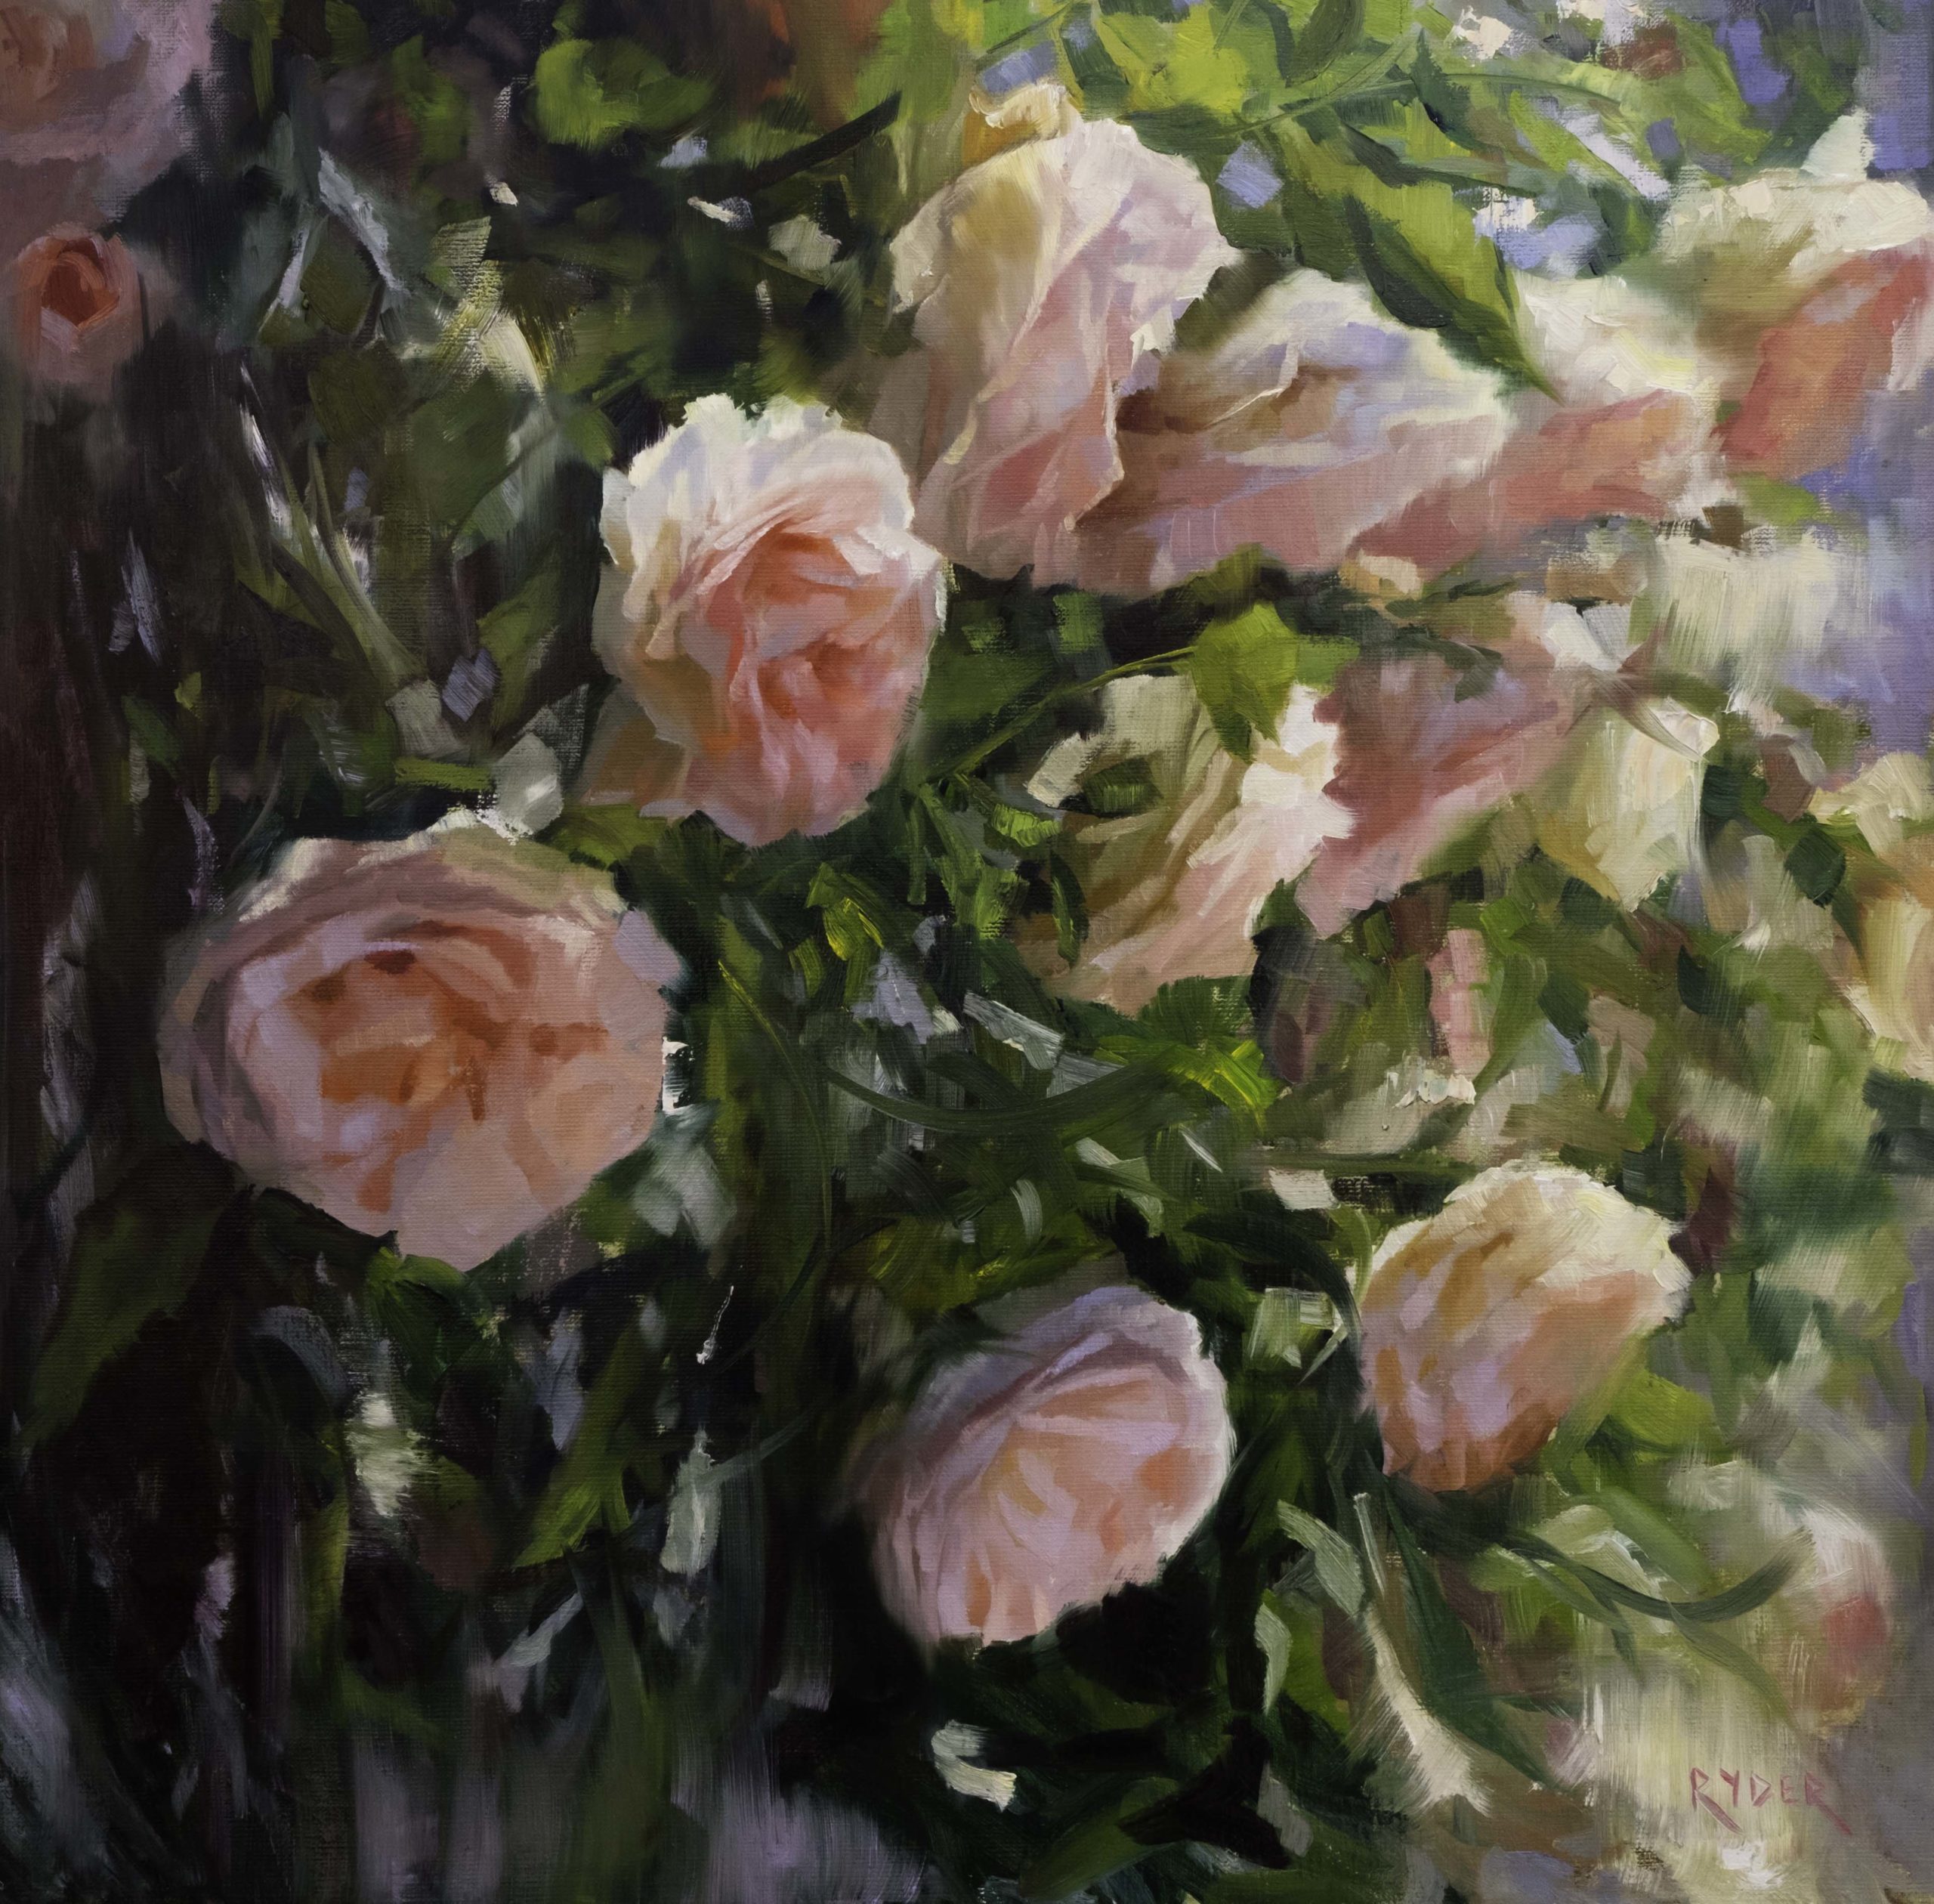 Matt Ryder, "It's All Sunlight and Roses," Oil on linen, 20" x 20"